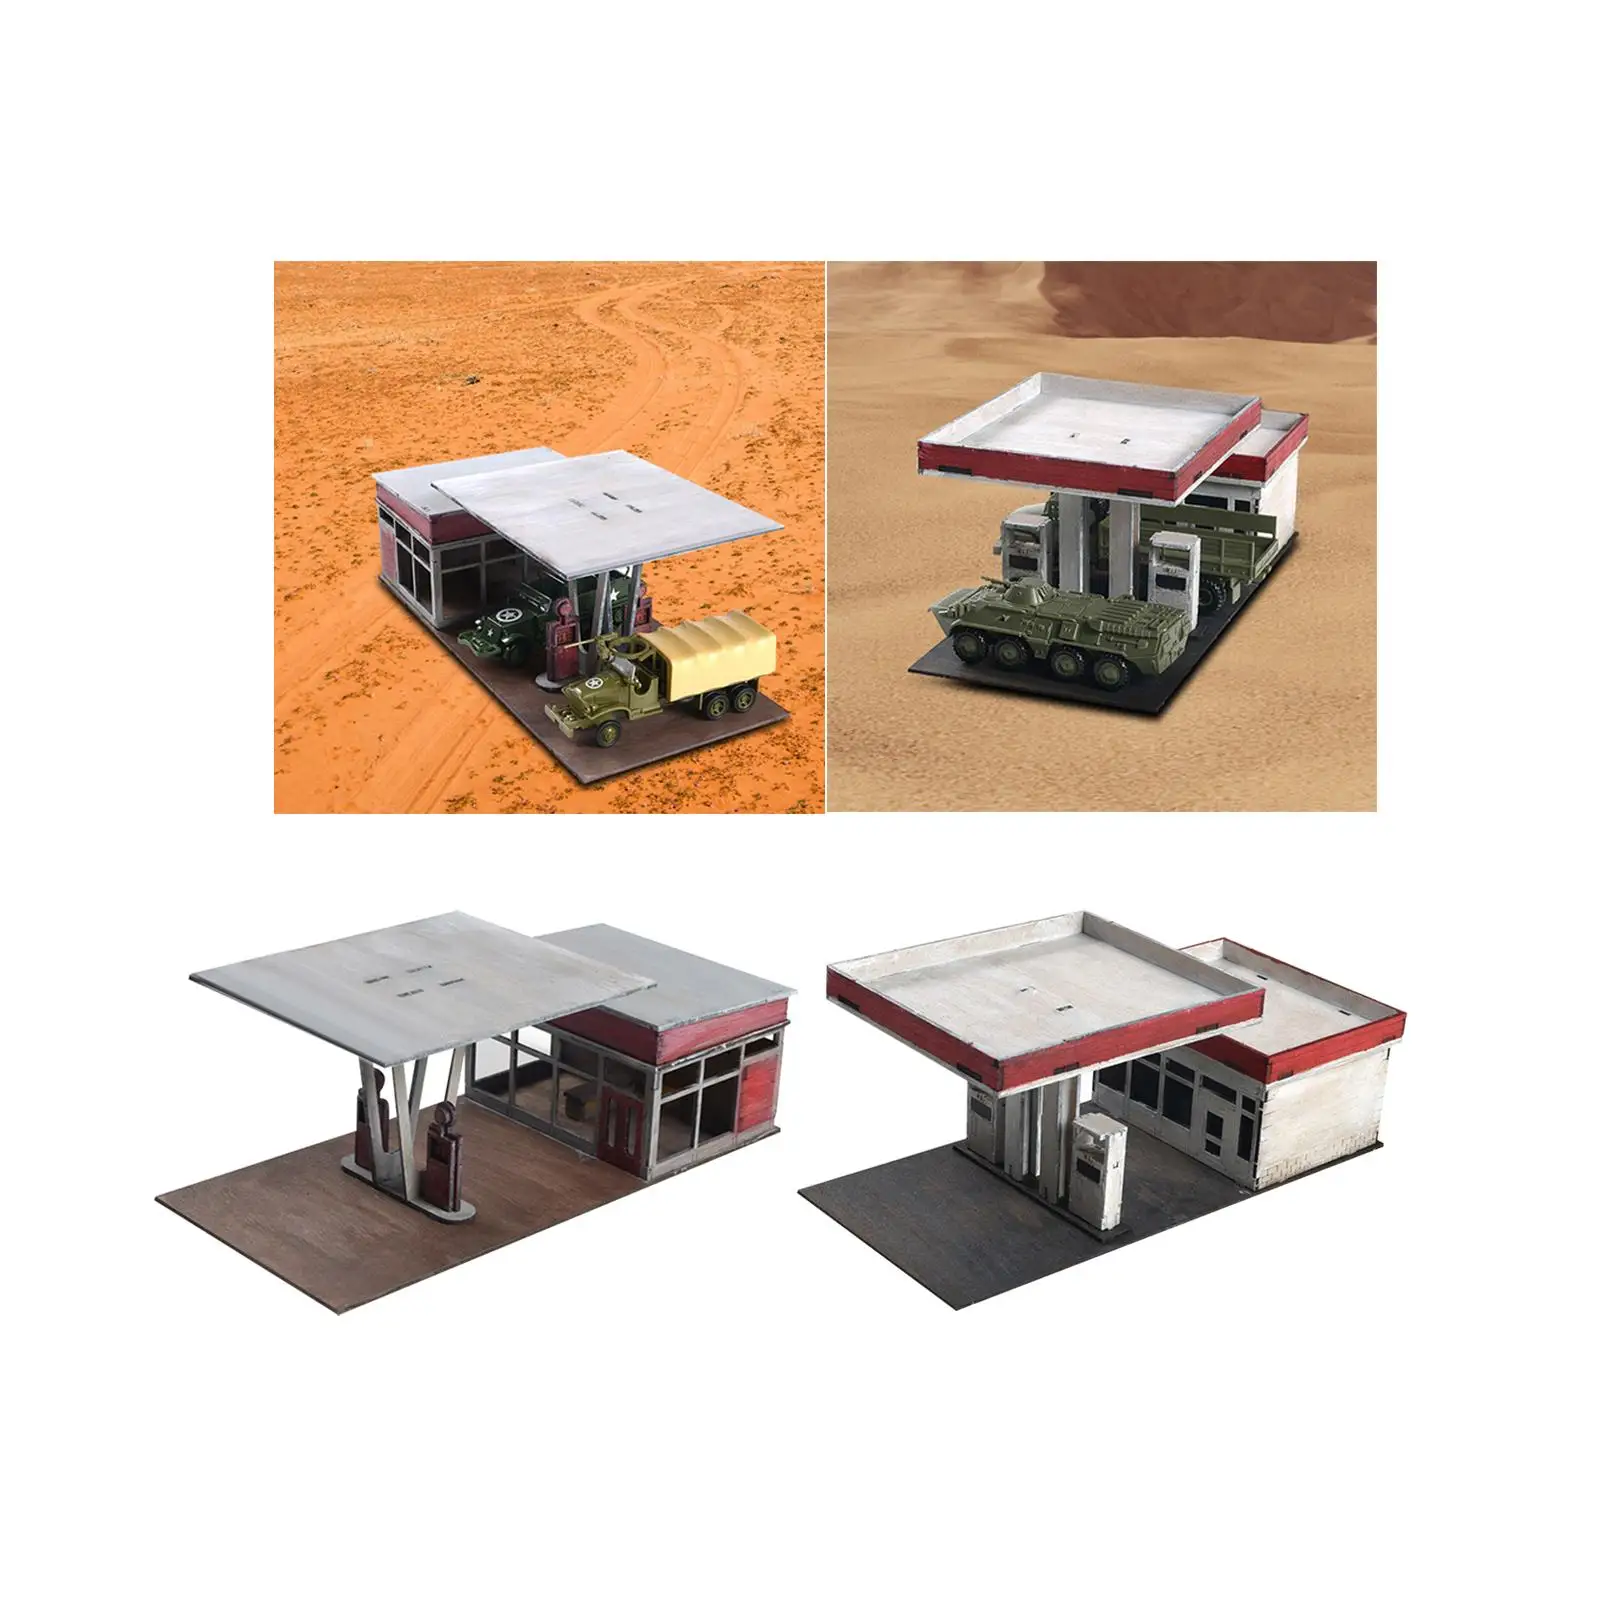 1:72 1:64 Scale Architecture Building Model Kits Landscape Unassembly Architecture Scene Model for Model Railway Accessory Decor